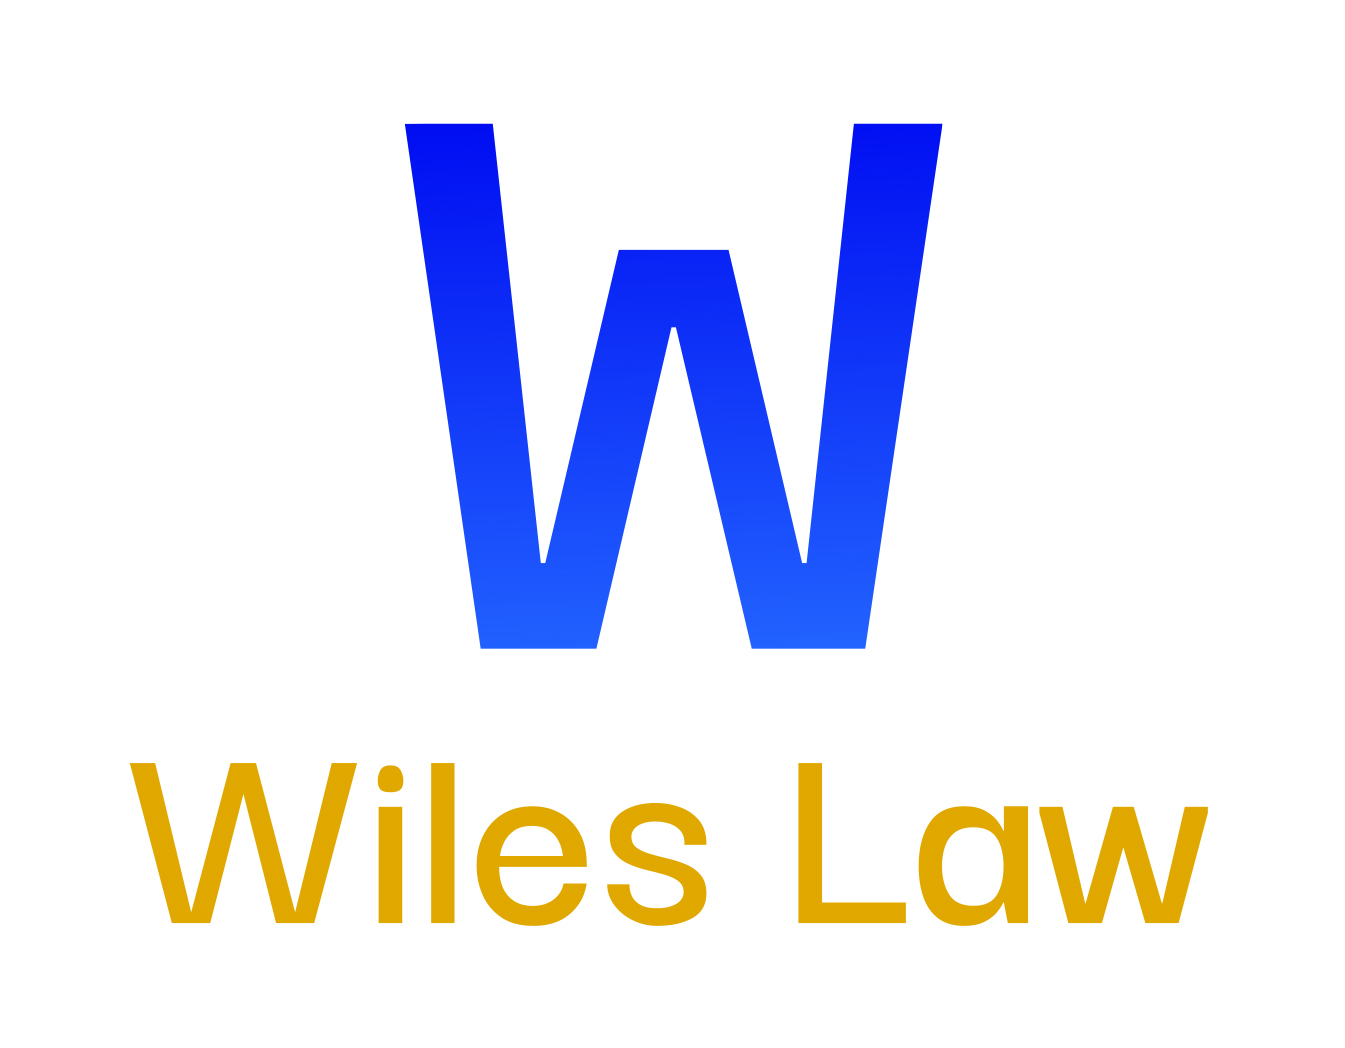 Wiles Law Fuller Branding